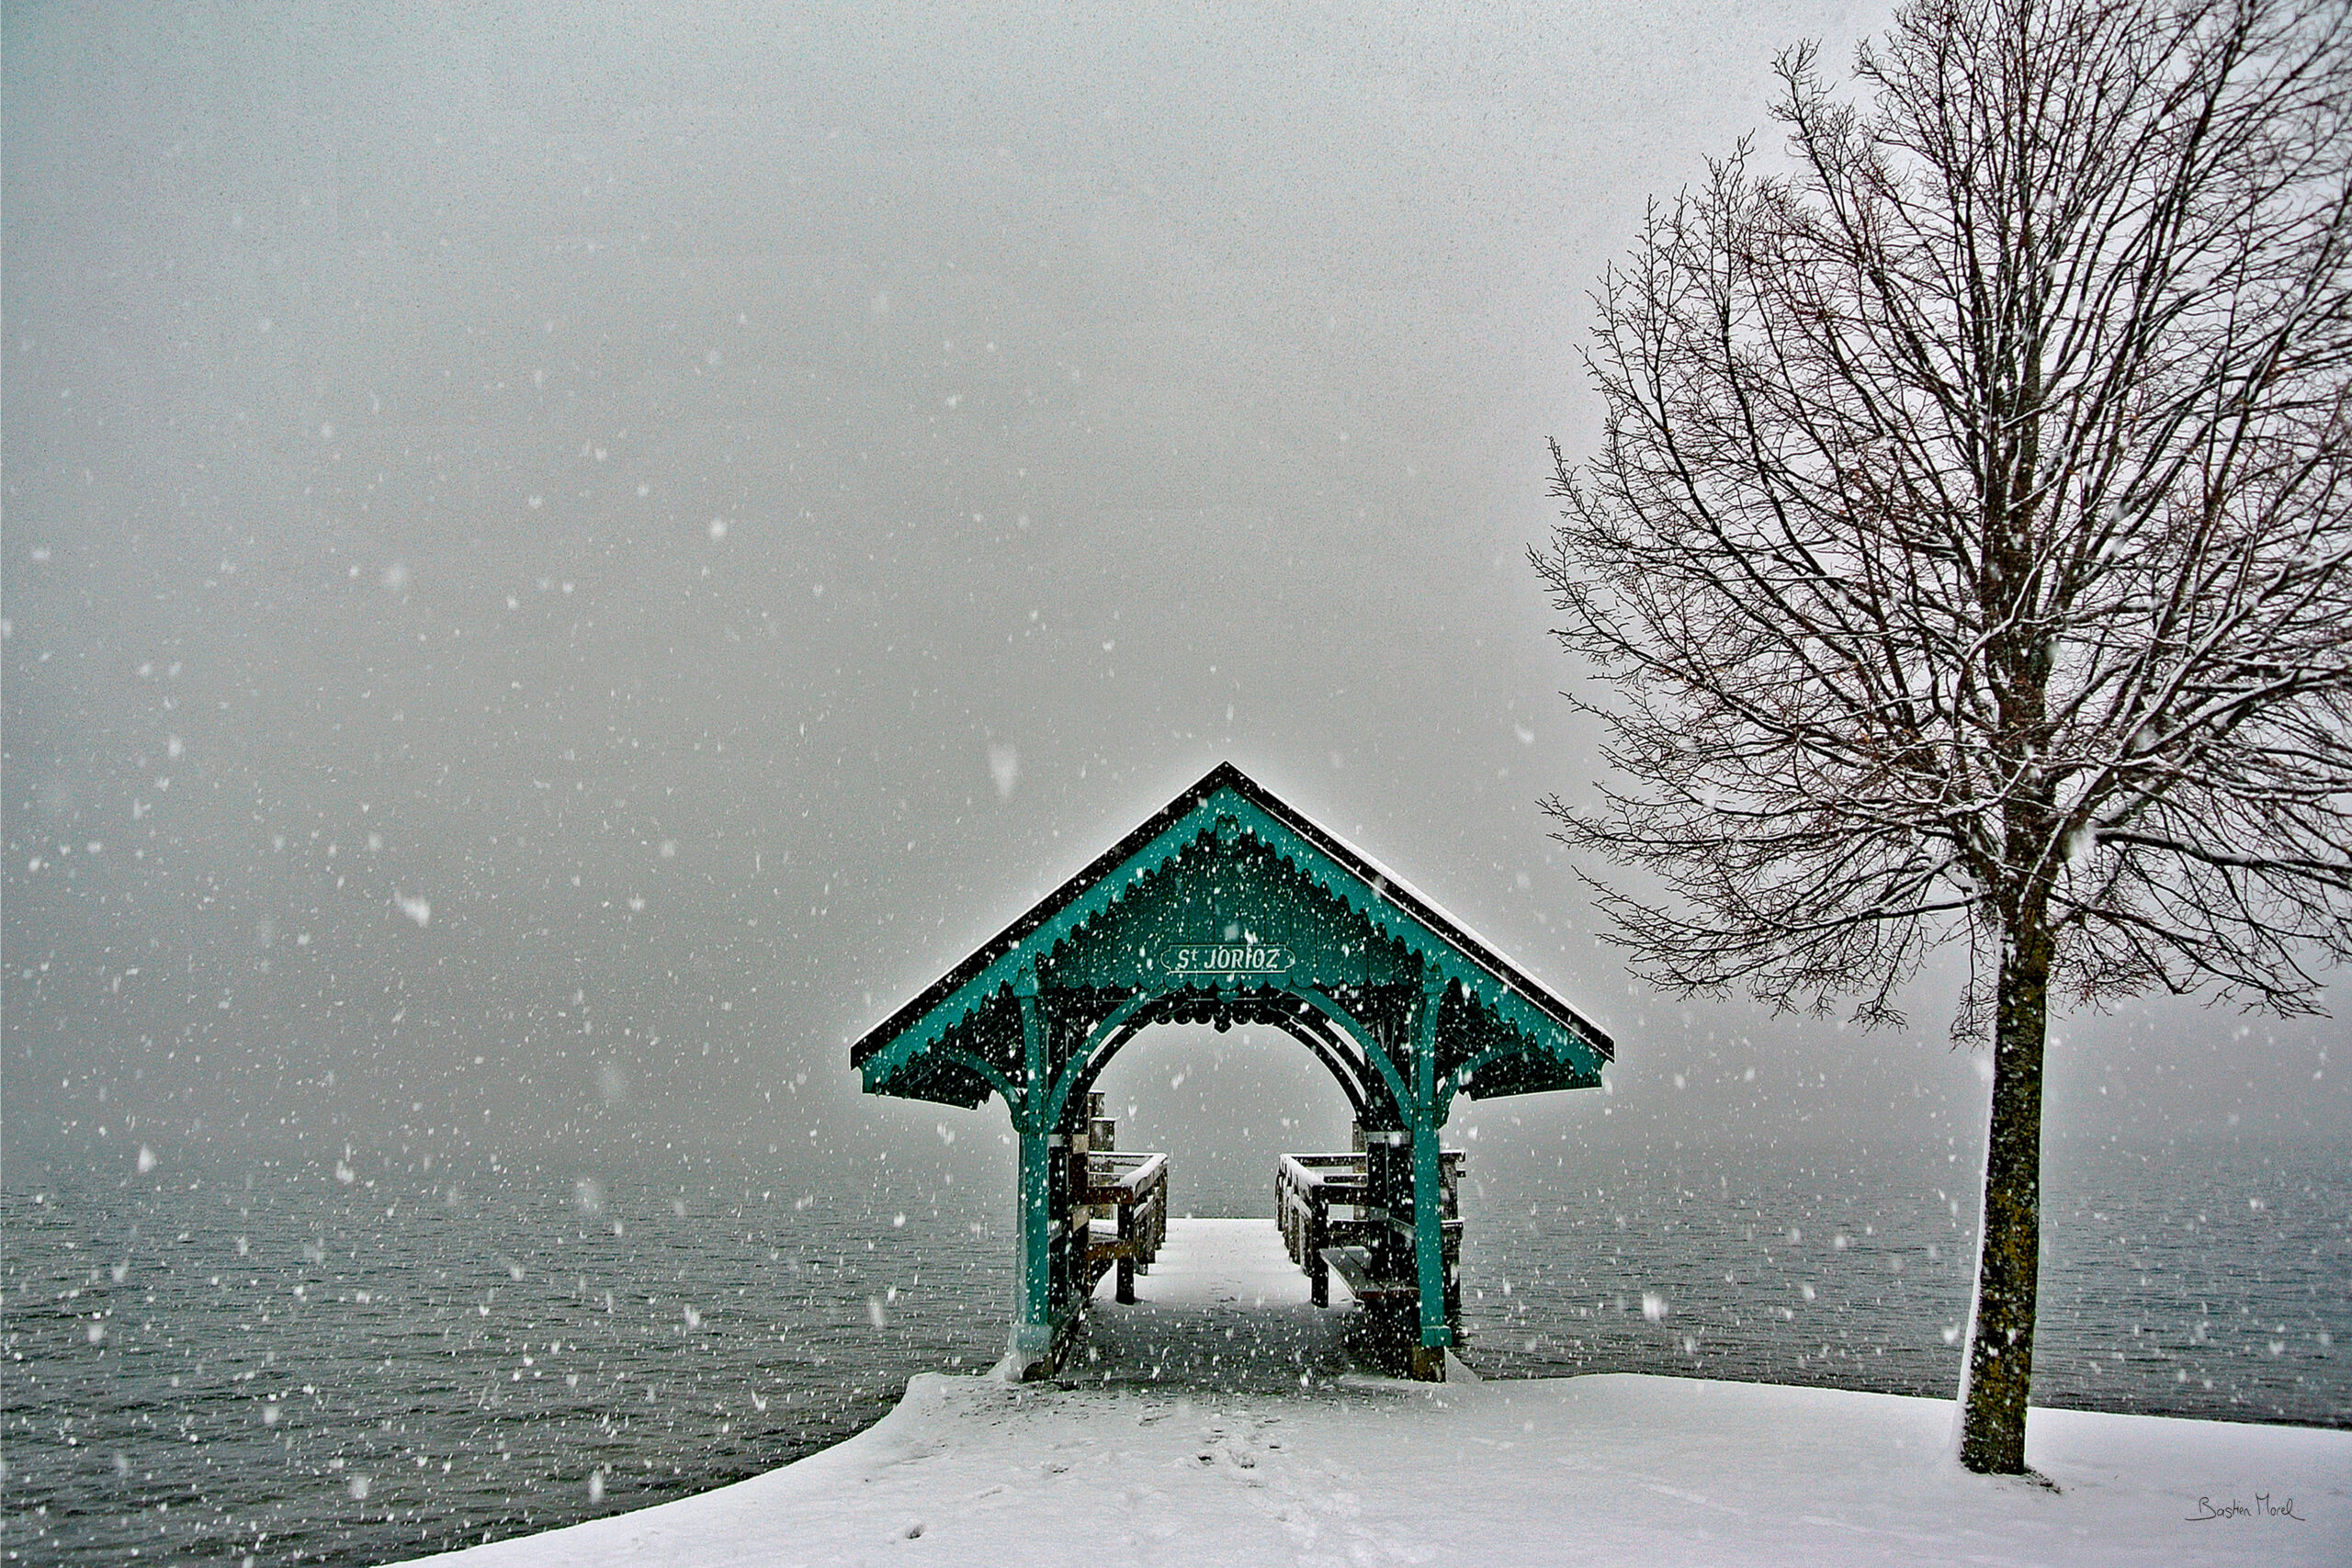 embarcadère de Saint Jorioz, Lac d'Annecy, sous la neige, par Bastien Morel